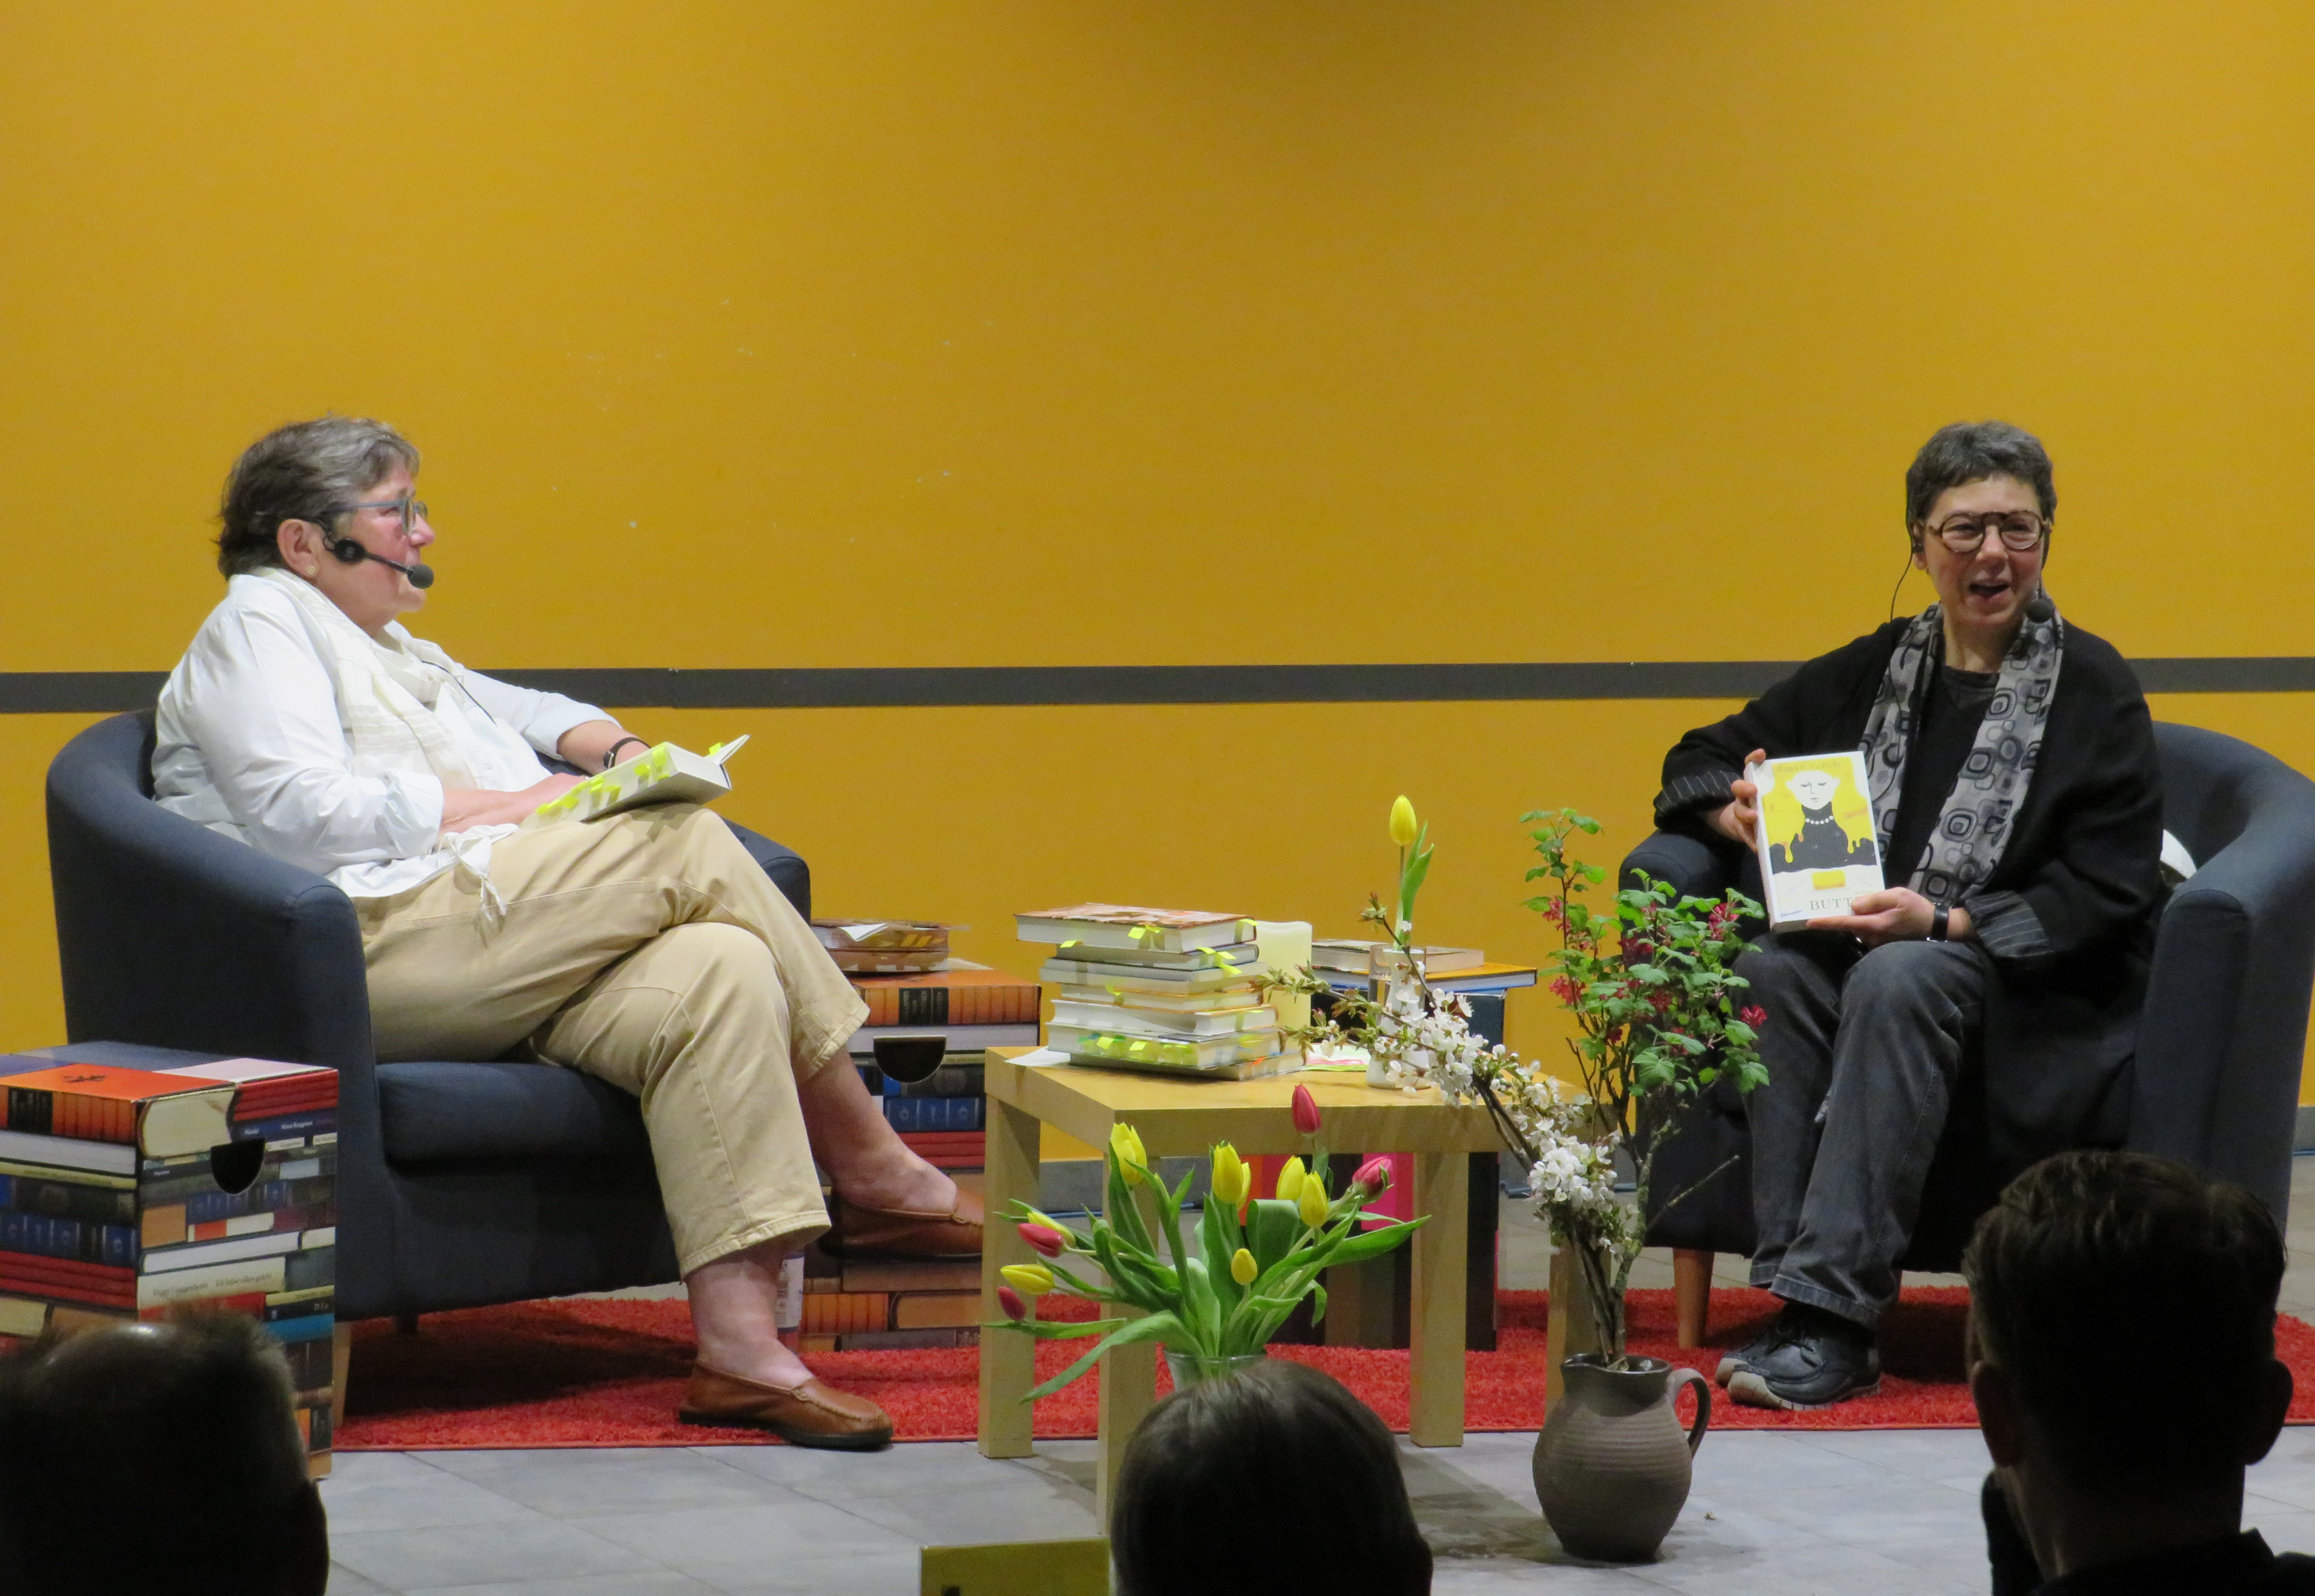  Frau Lindner zeigt lachend das gelbe Cover ihres Buches ins Publikum - das Bild wird mit Klick vergrößert 